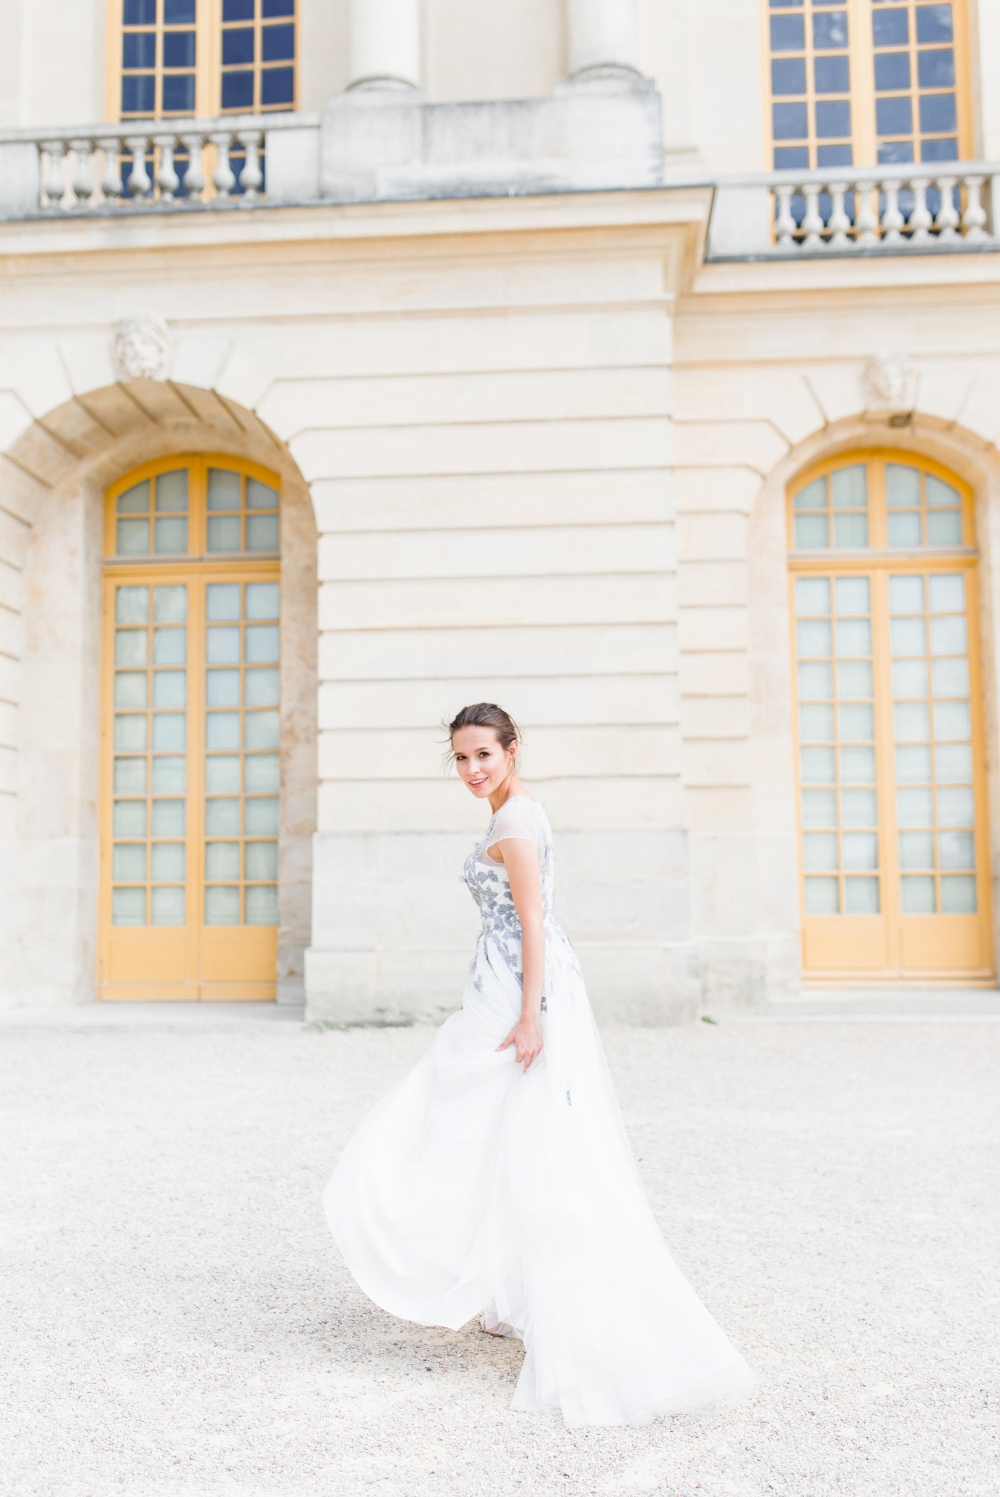 Воздушное свадебные платье А-силуэта с цветным, расшитым бусинами кружевом по талии, делает платье более игривым и необыкновенным.